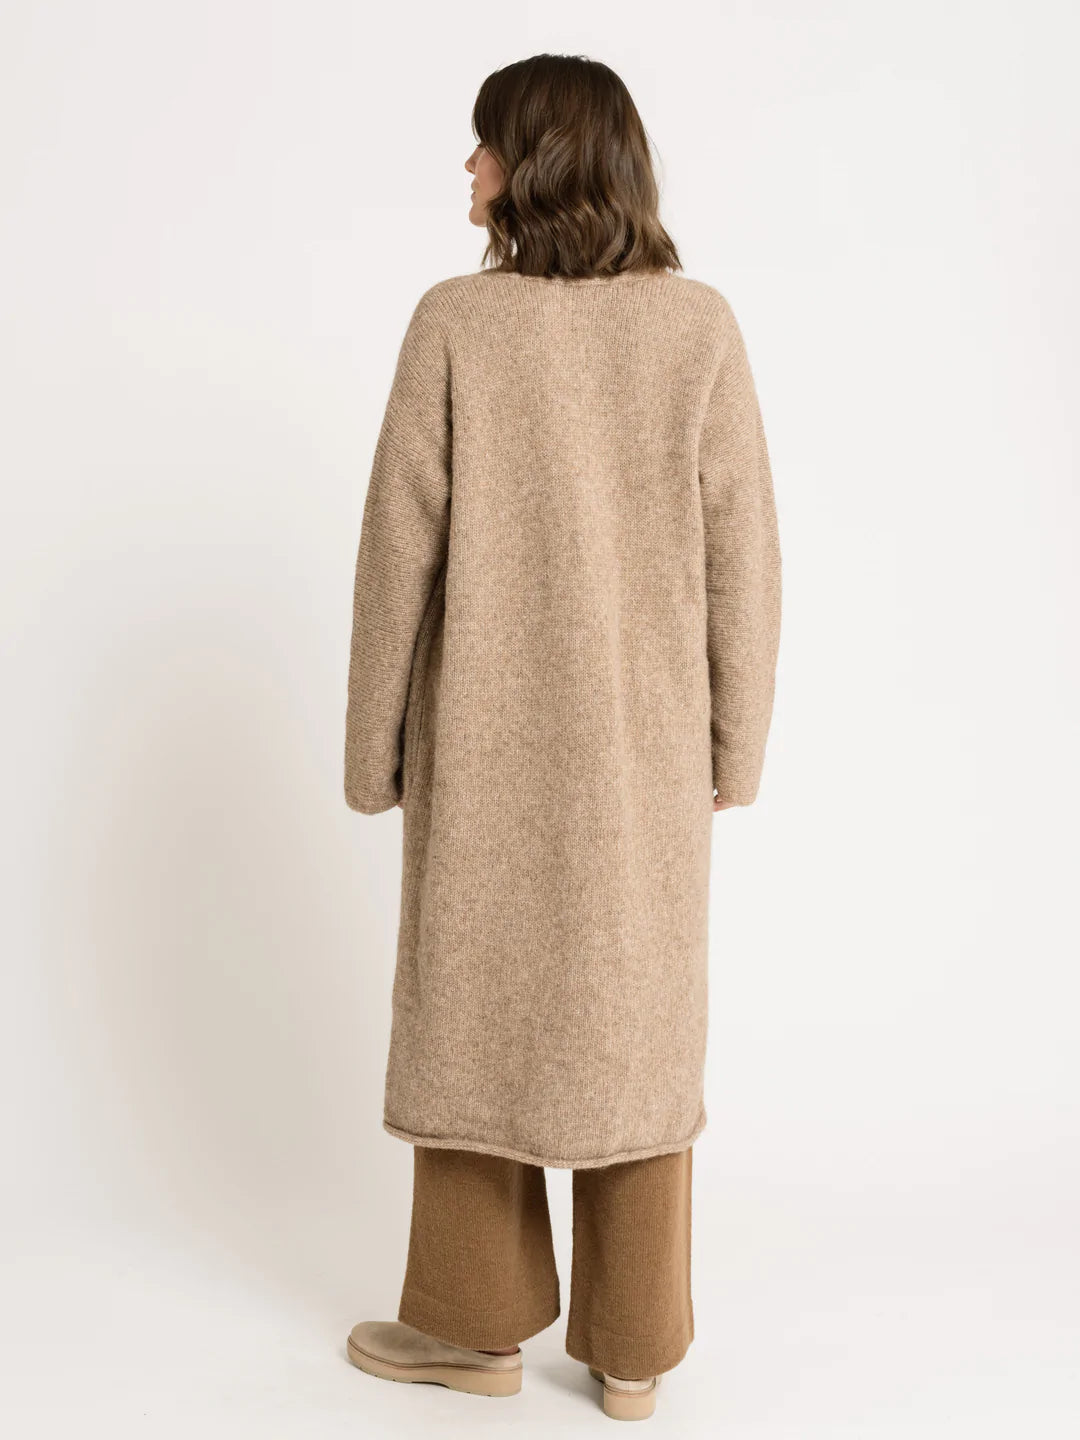 Heirloom Sweater Coat - Acorn